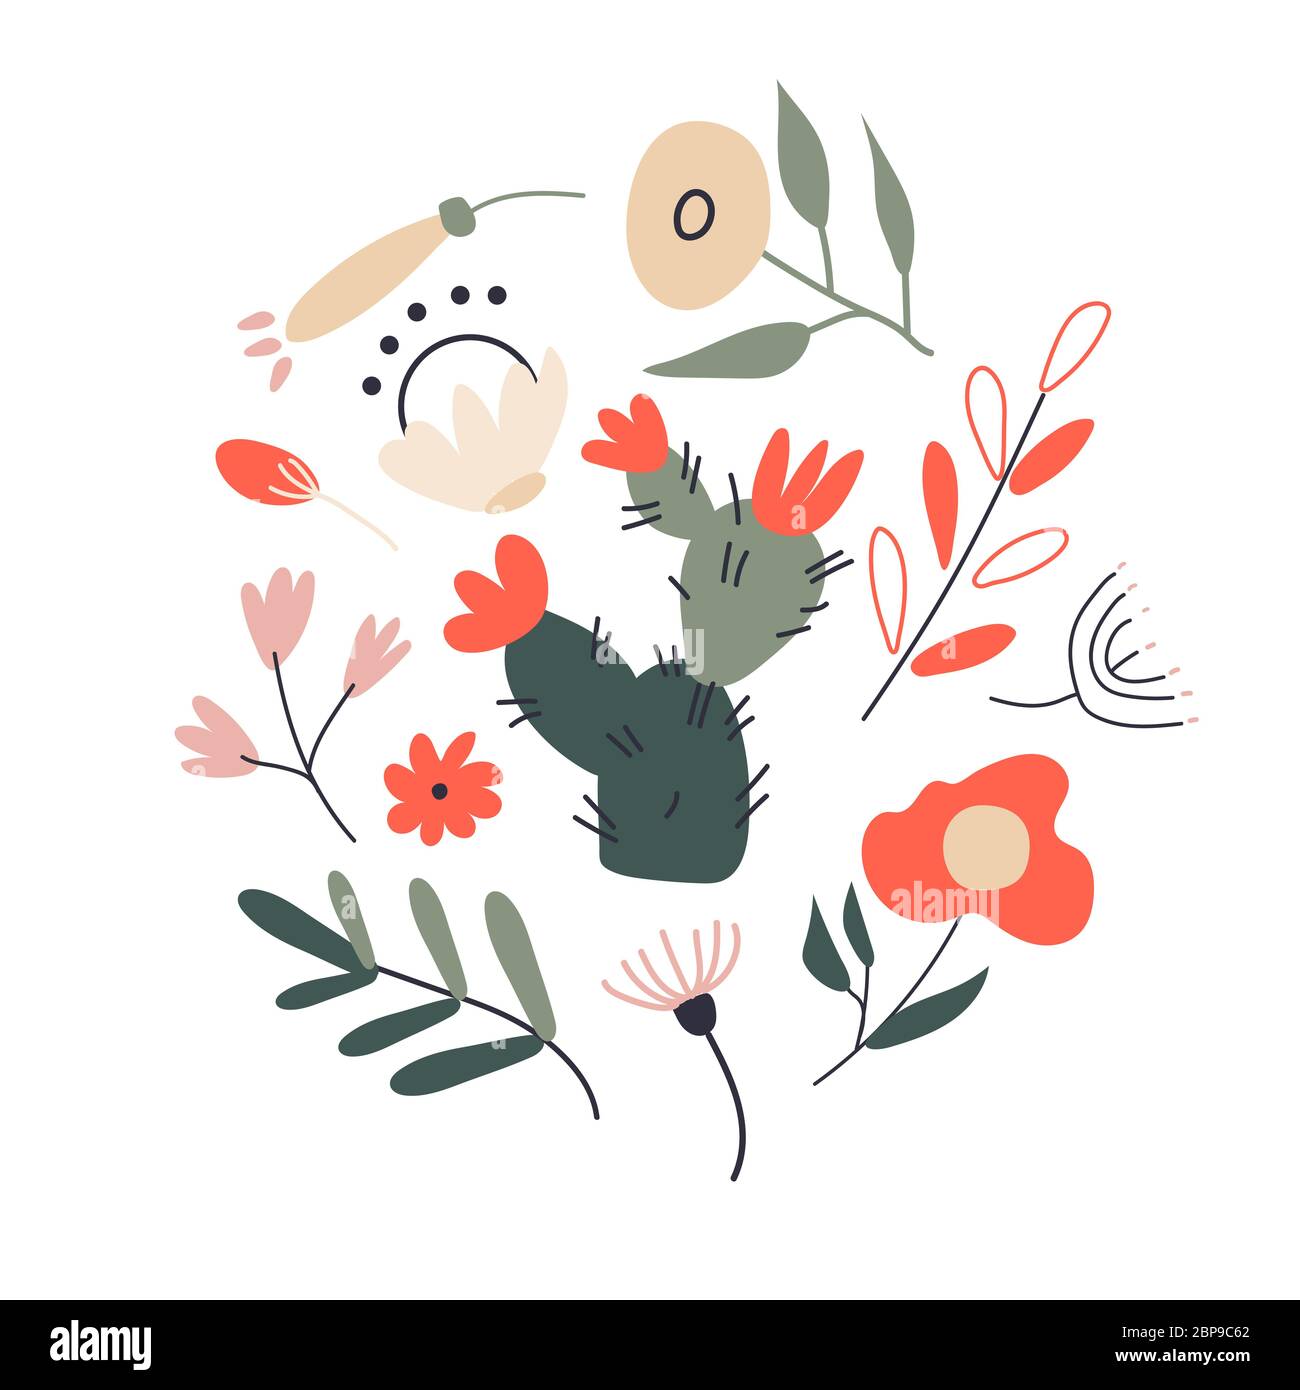 Musterset mit vielen verschiedenen tropischen exotischen Blättern, Pflanzen und Blumen auf weißem Hintergrund. Sammlung von fertigen und isolierten Vektor-Illustra Stock Vektor